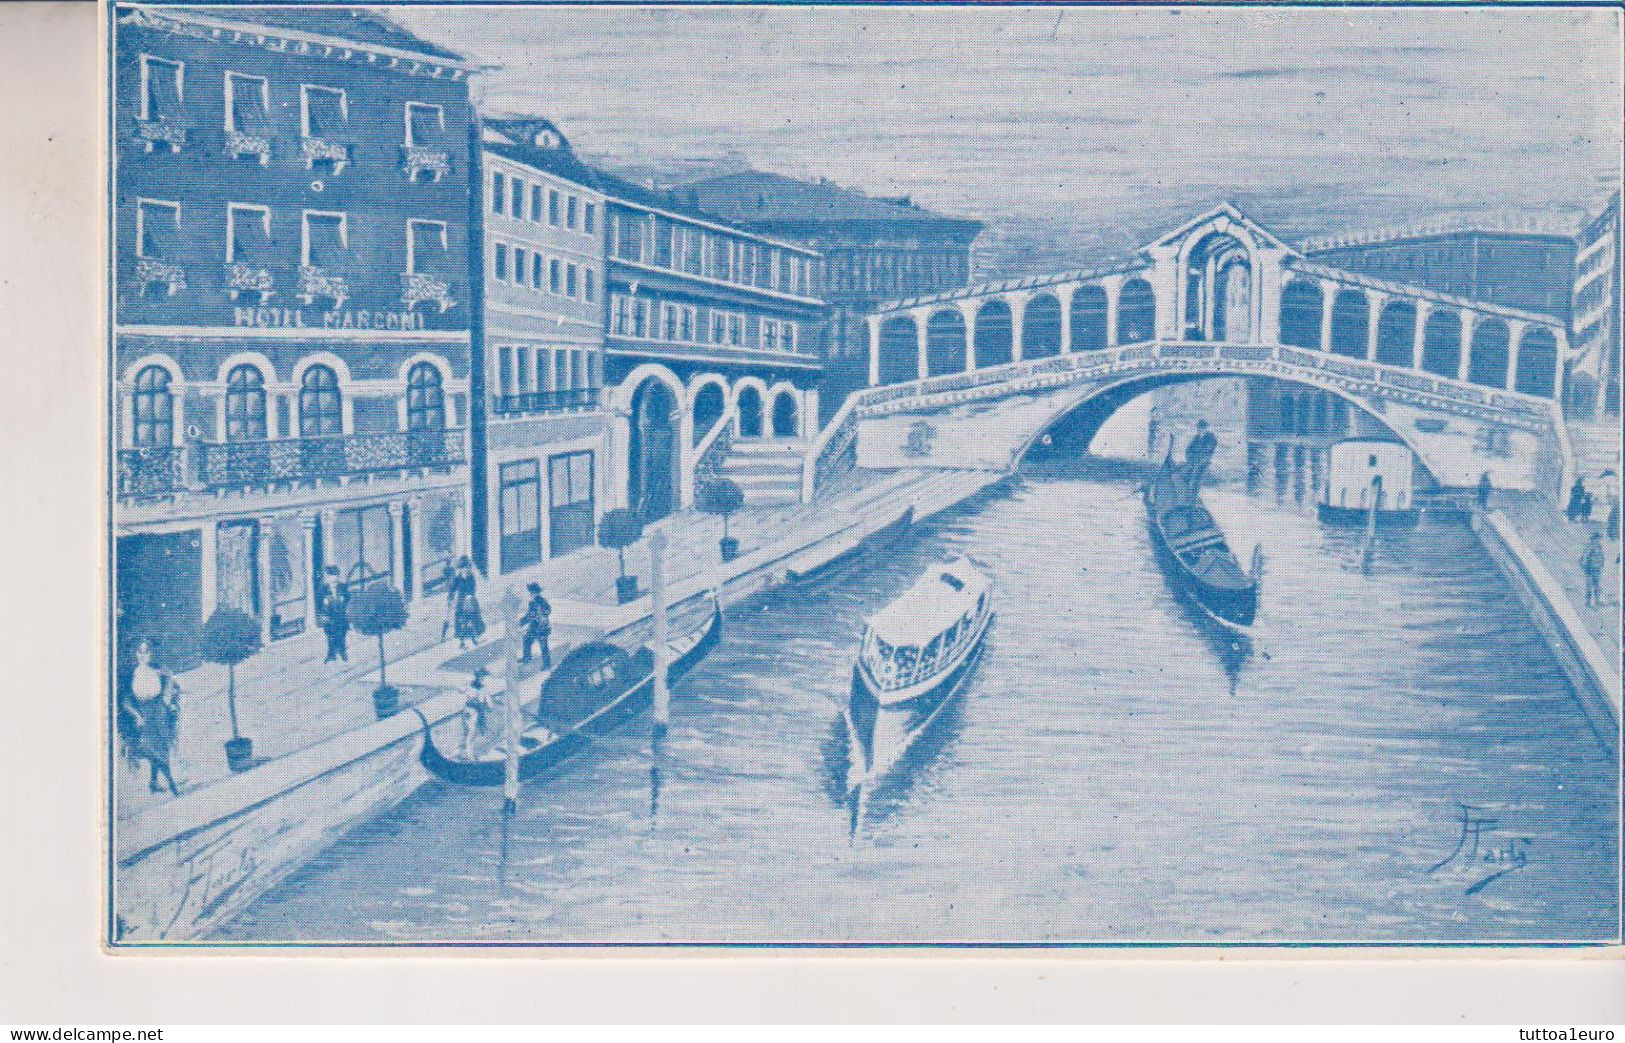 VENEZIA  HOTEL MARCONI  GRAN CANAL RIALTO PUBBLICITARIA - Venezia (Venedig)